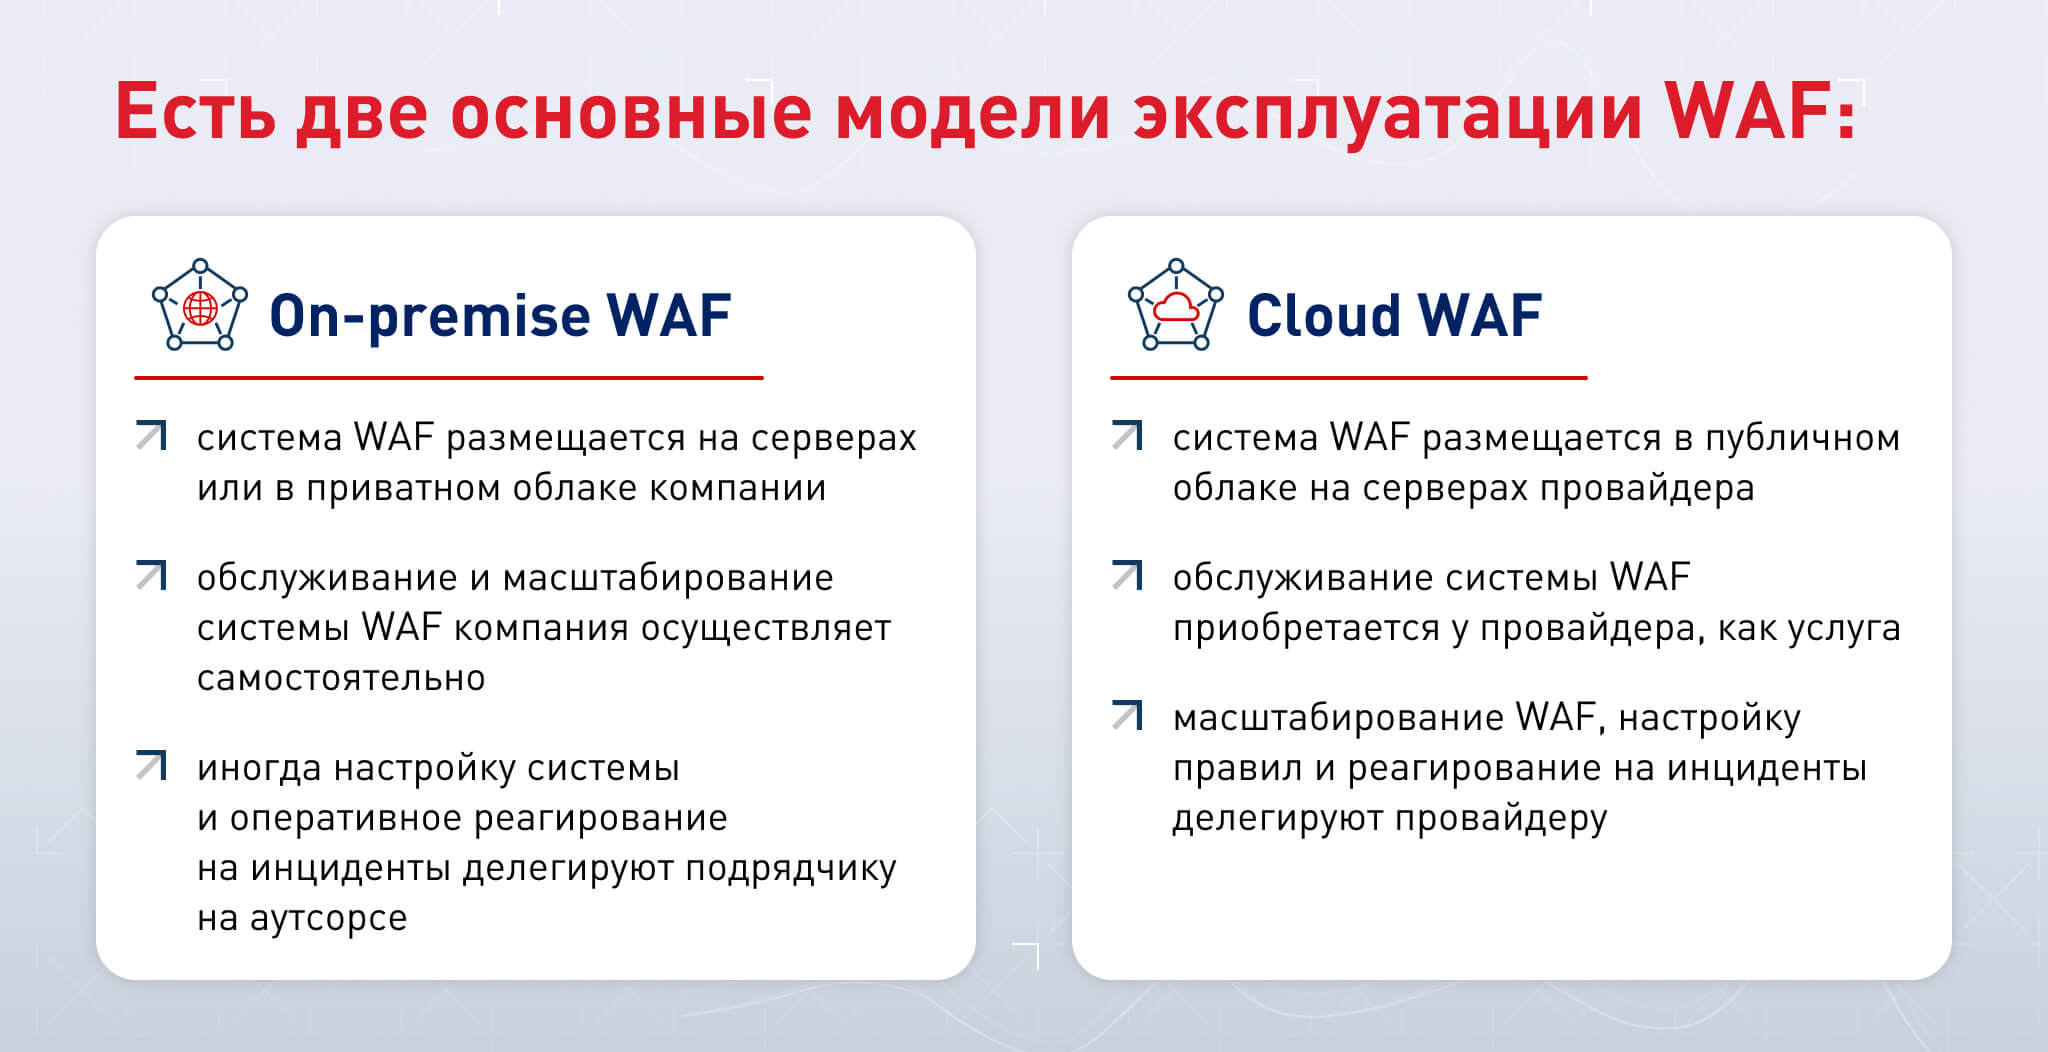 On-premise WAF или Cloud WAF